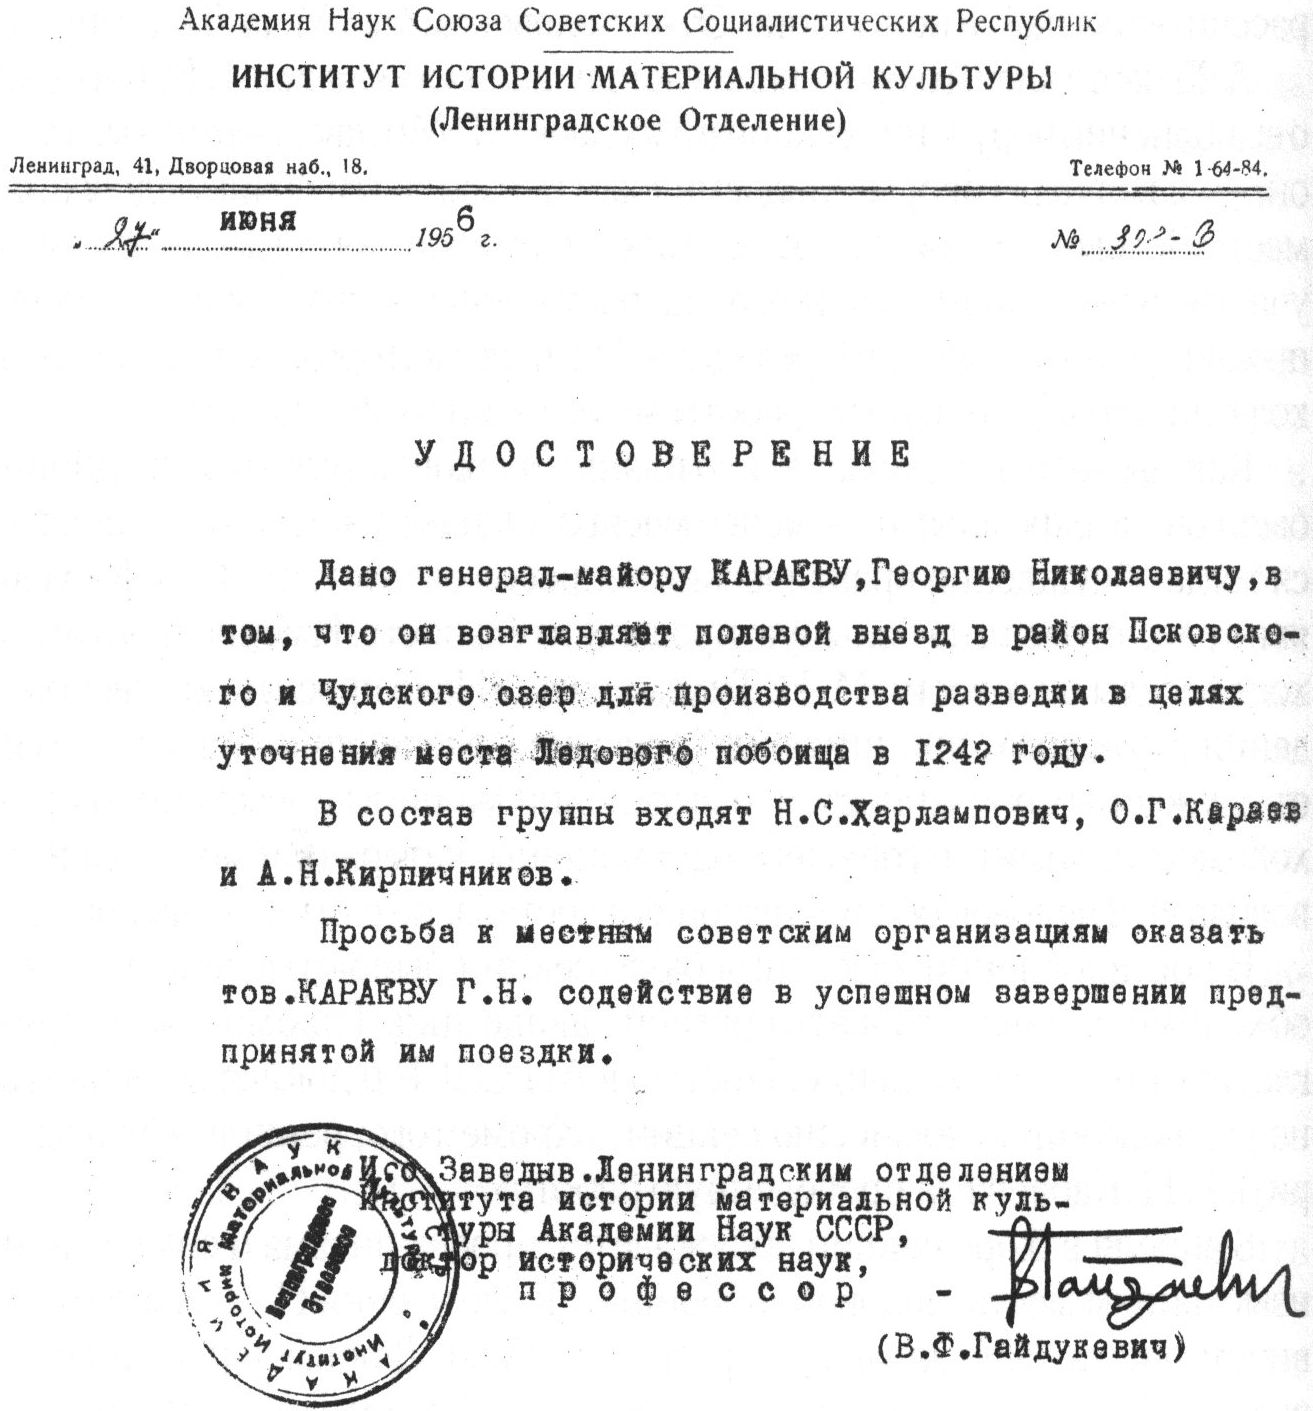 Удостоверение, данное Г.Н. Караеву Институтом истории материальной культуры